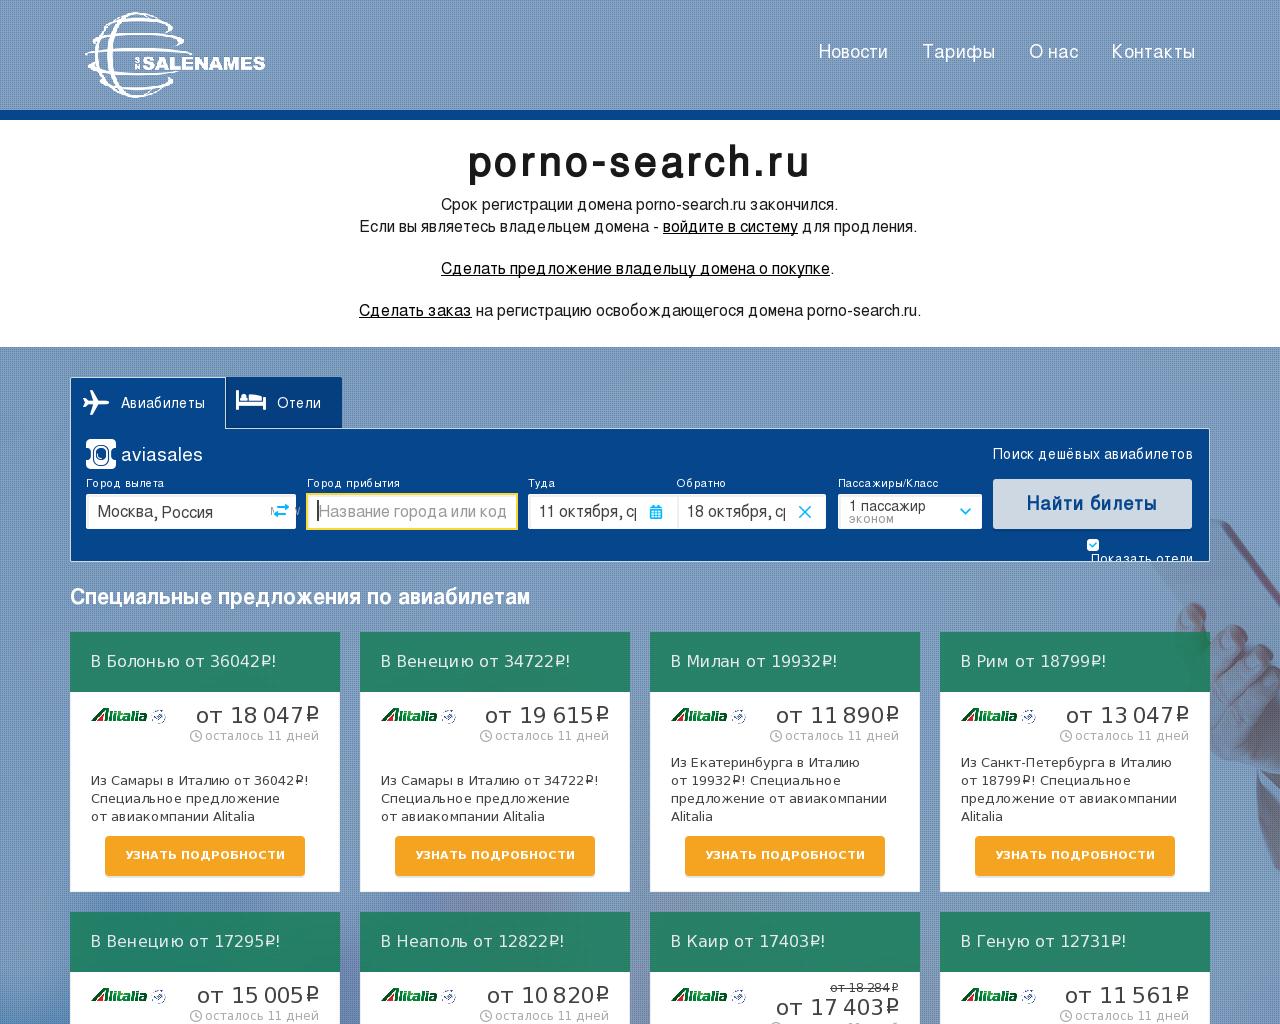 Изображение сайта porno-search.ru в разрешении 1280x1024